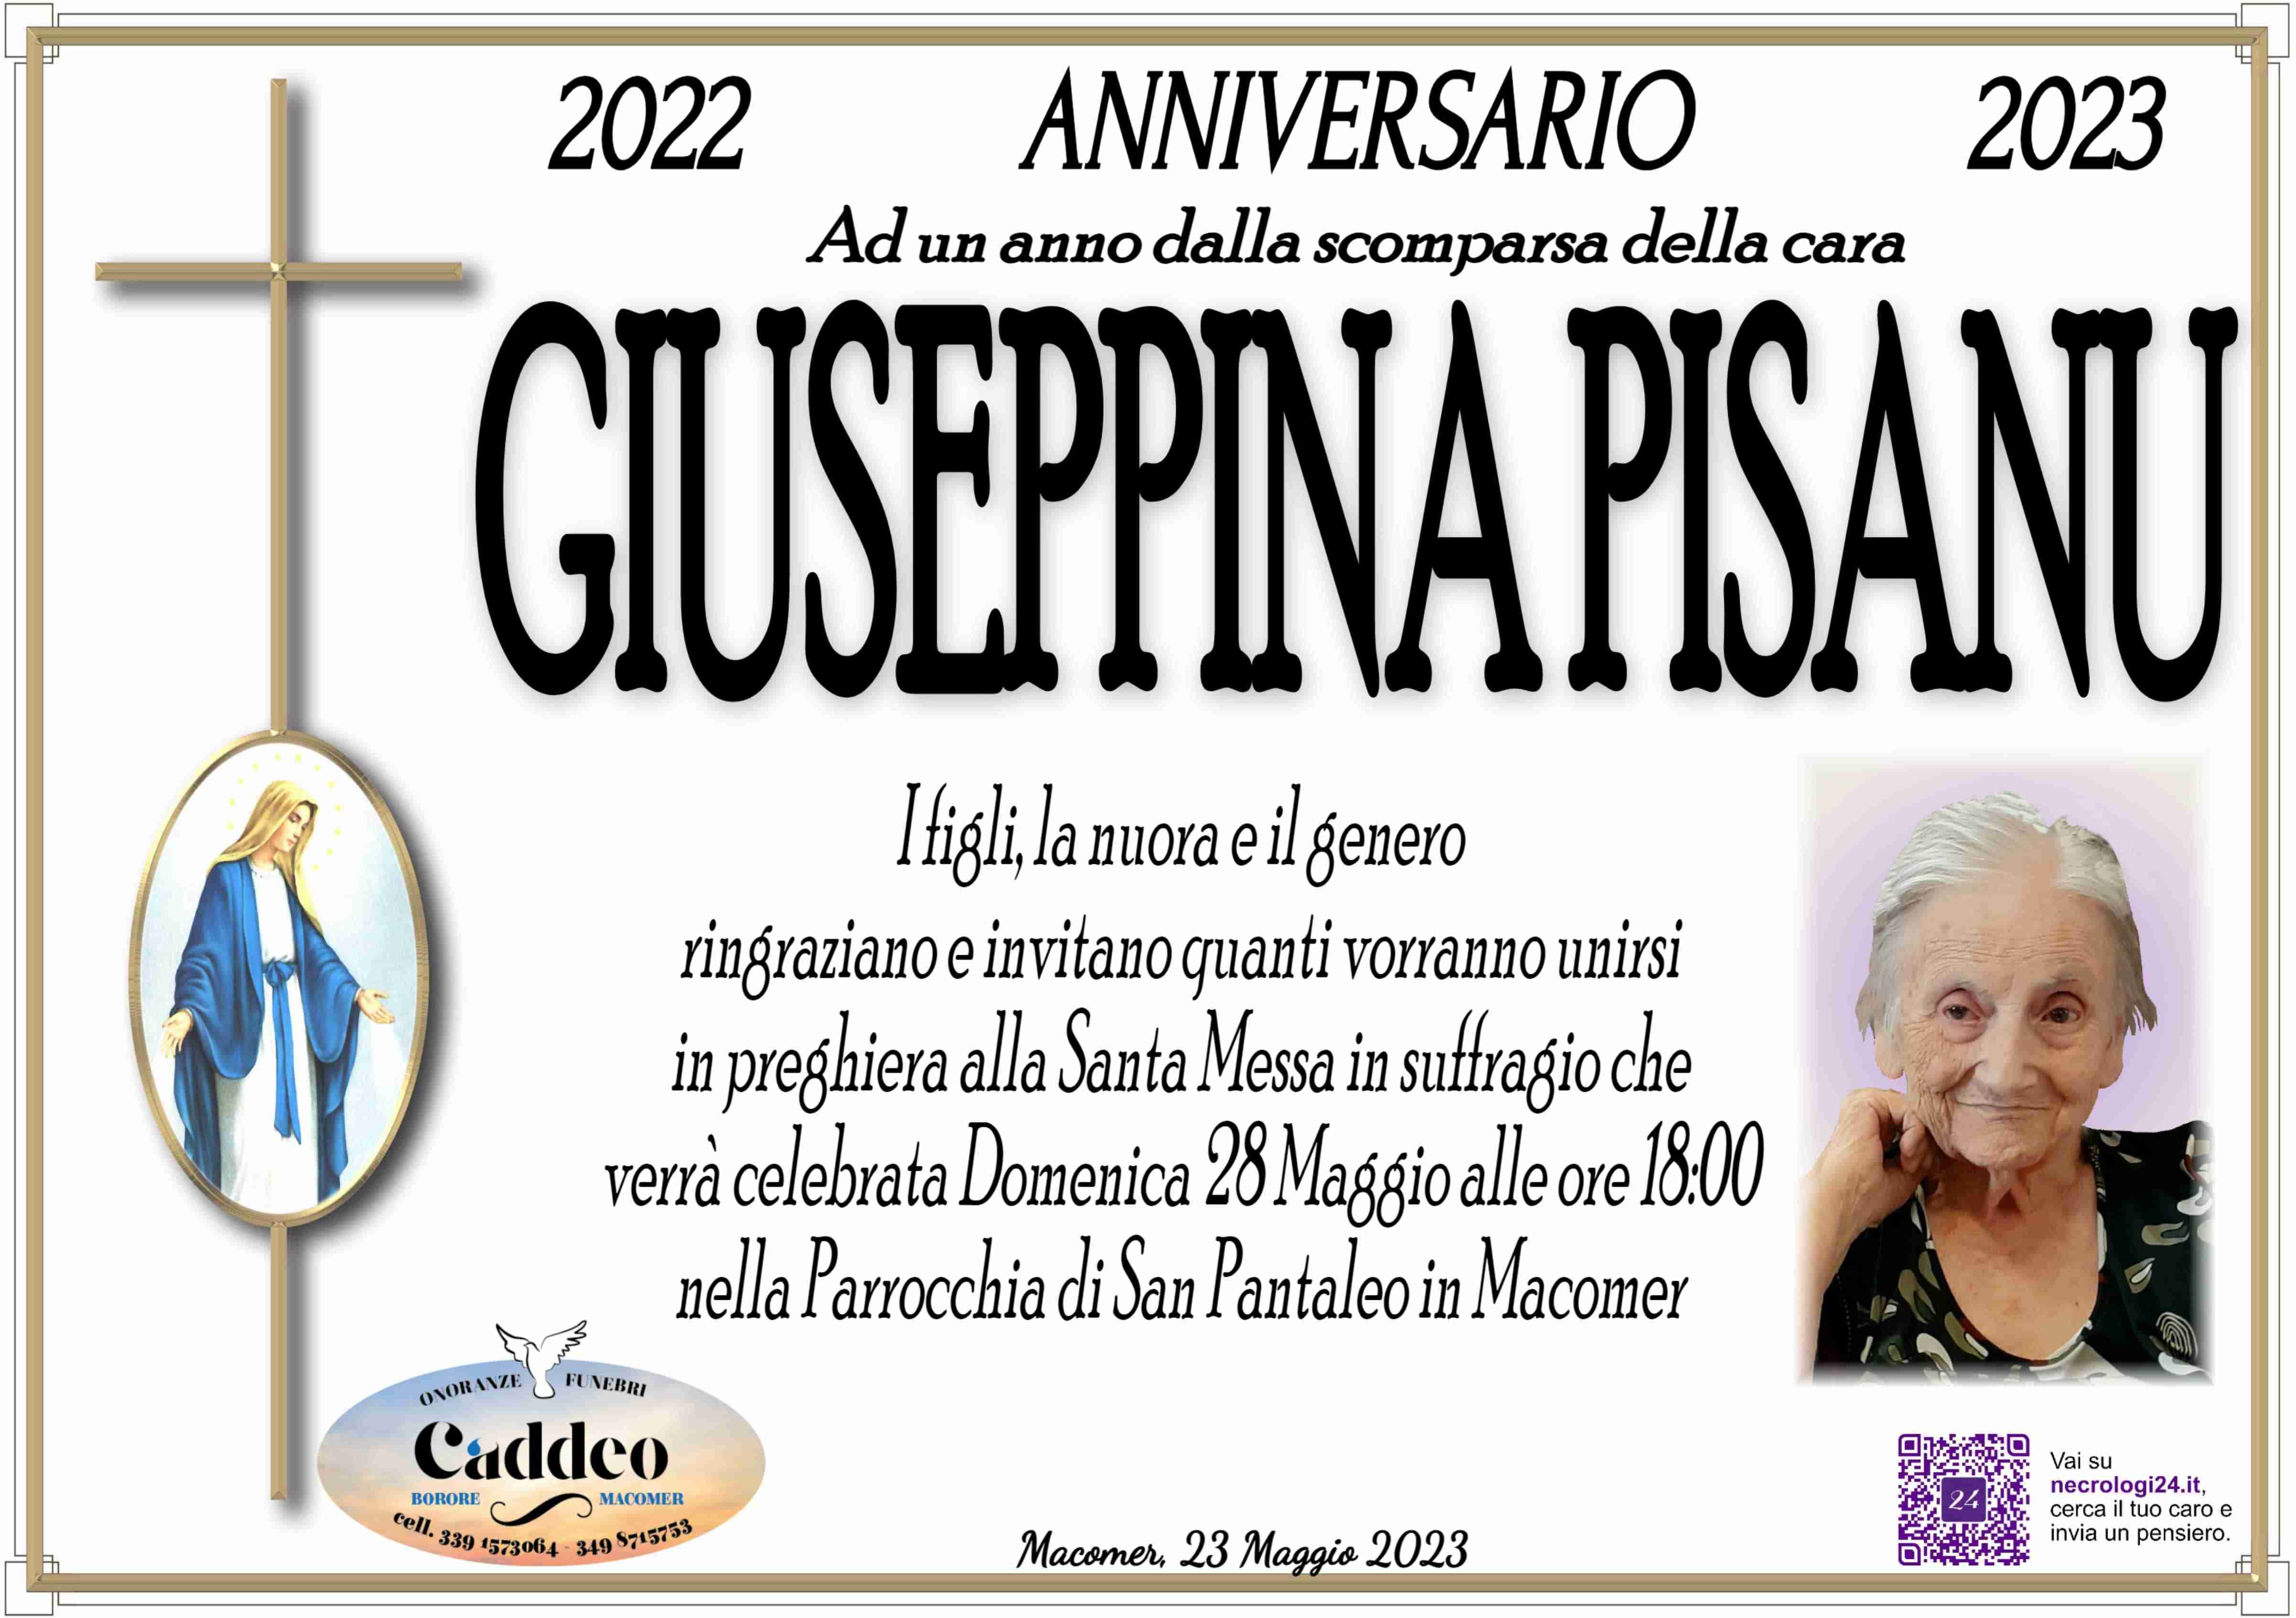 Giuseppina Pisanu